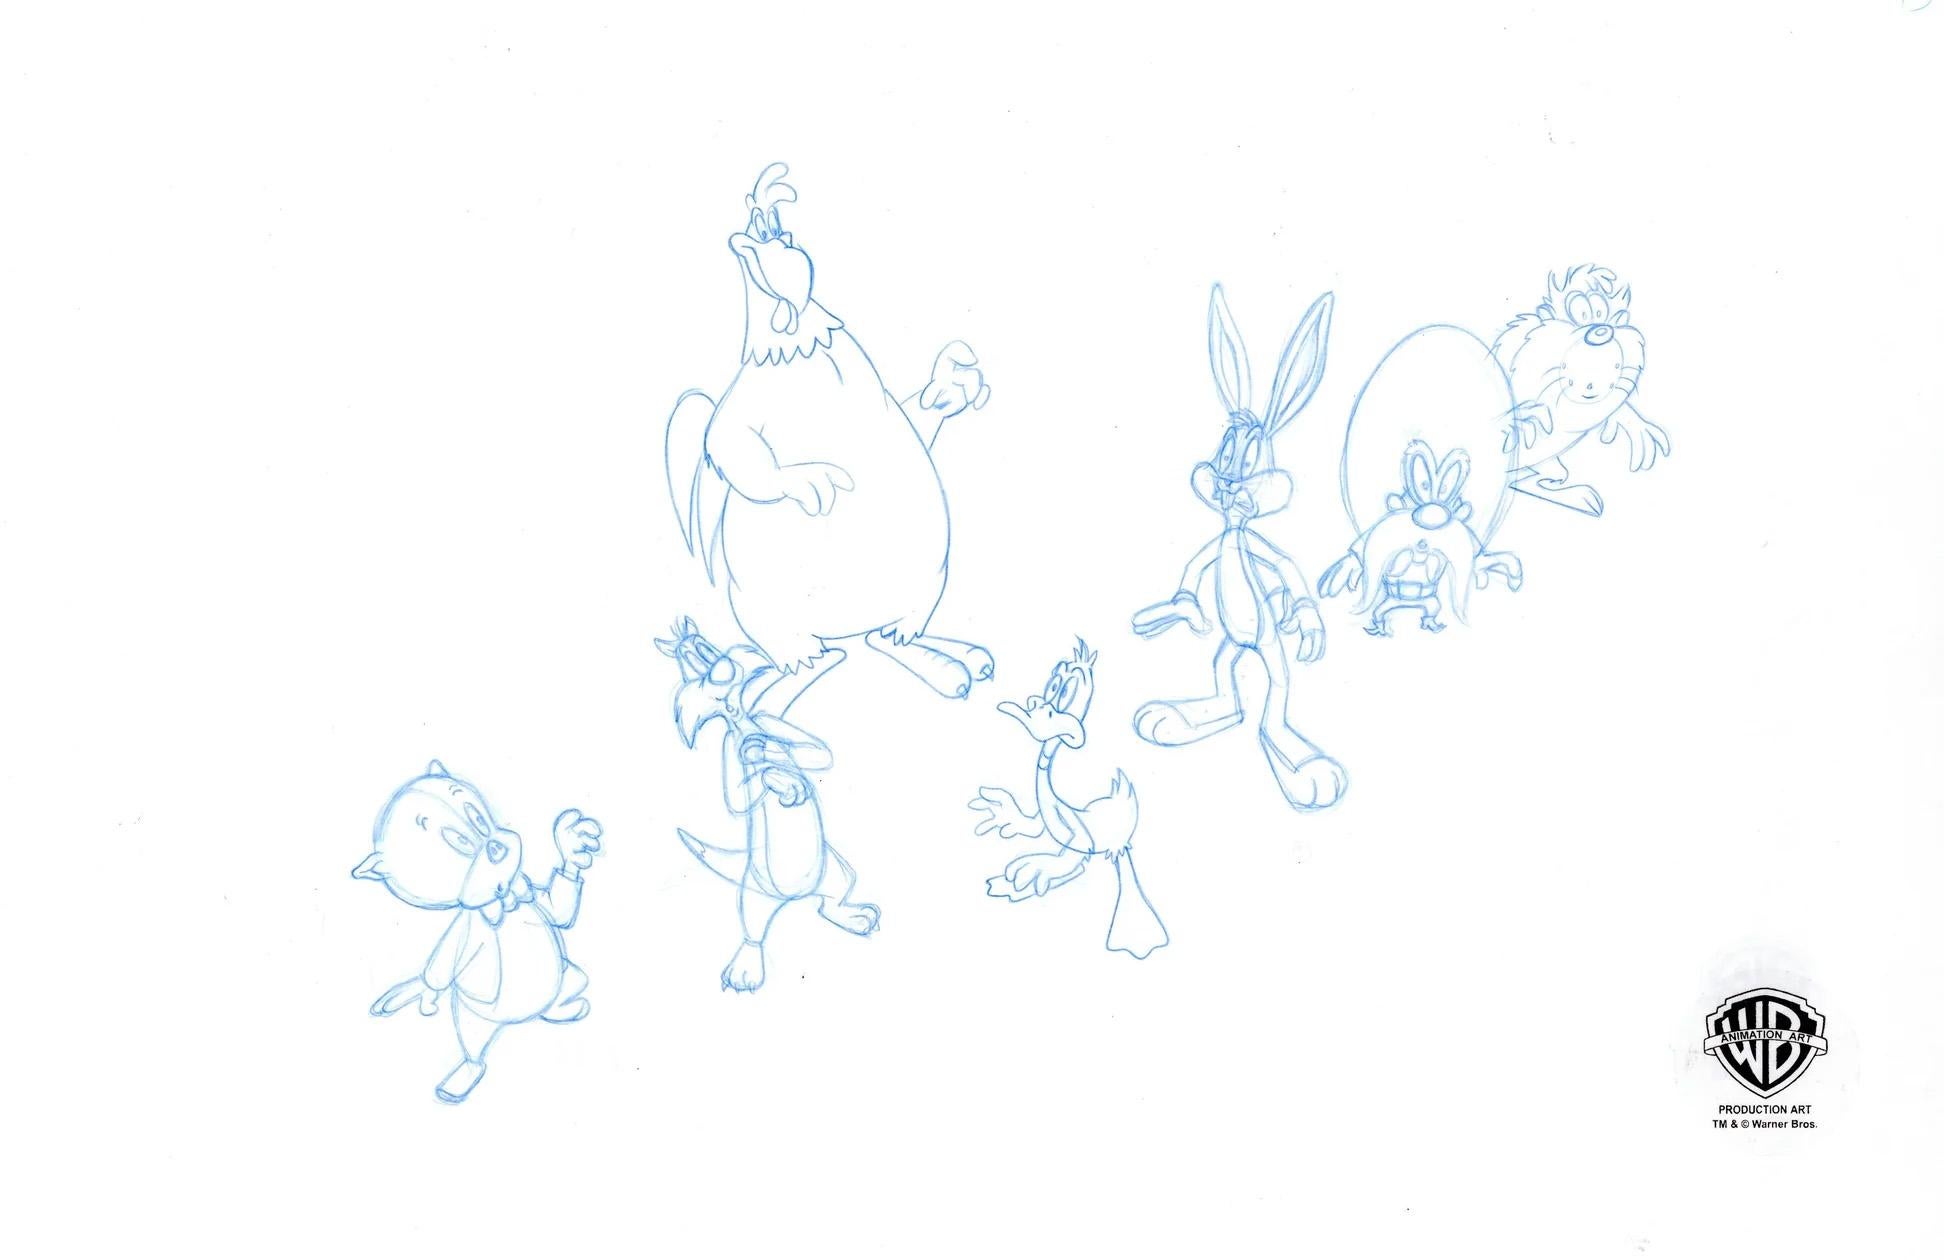 Looney Tunes Original Produktion Doppelseitige Zeichnung: Lose Tunes gegossen – Art von Looney Tunes Studio Artists